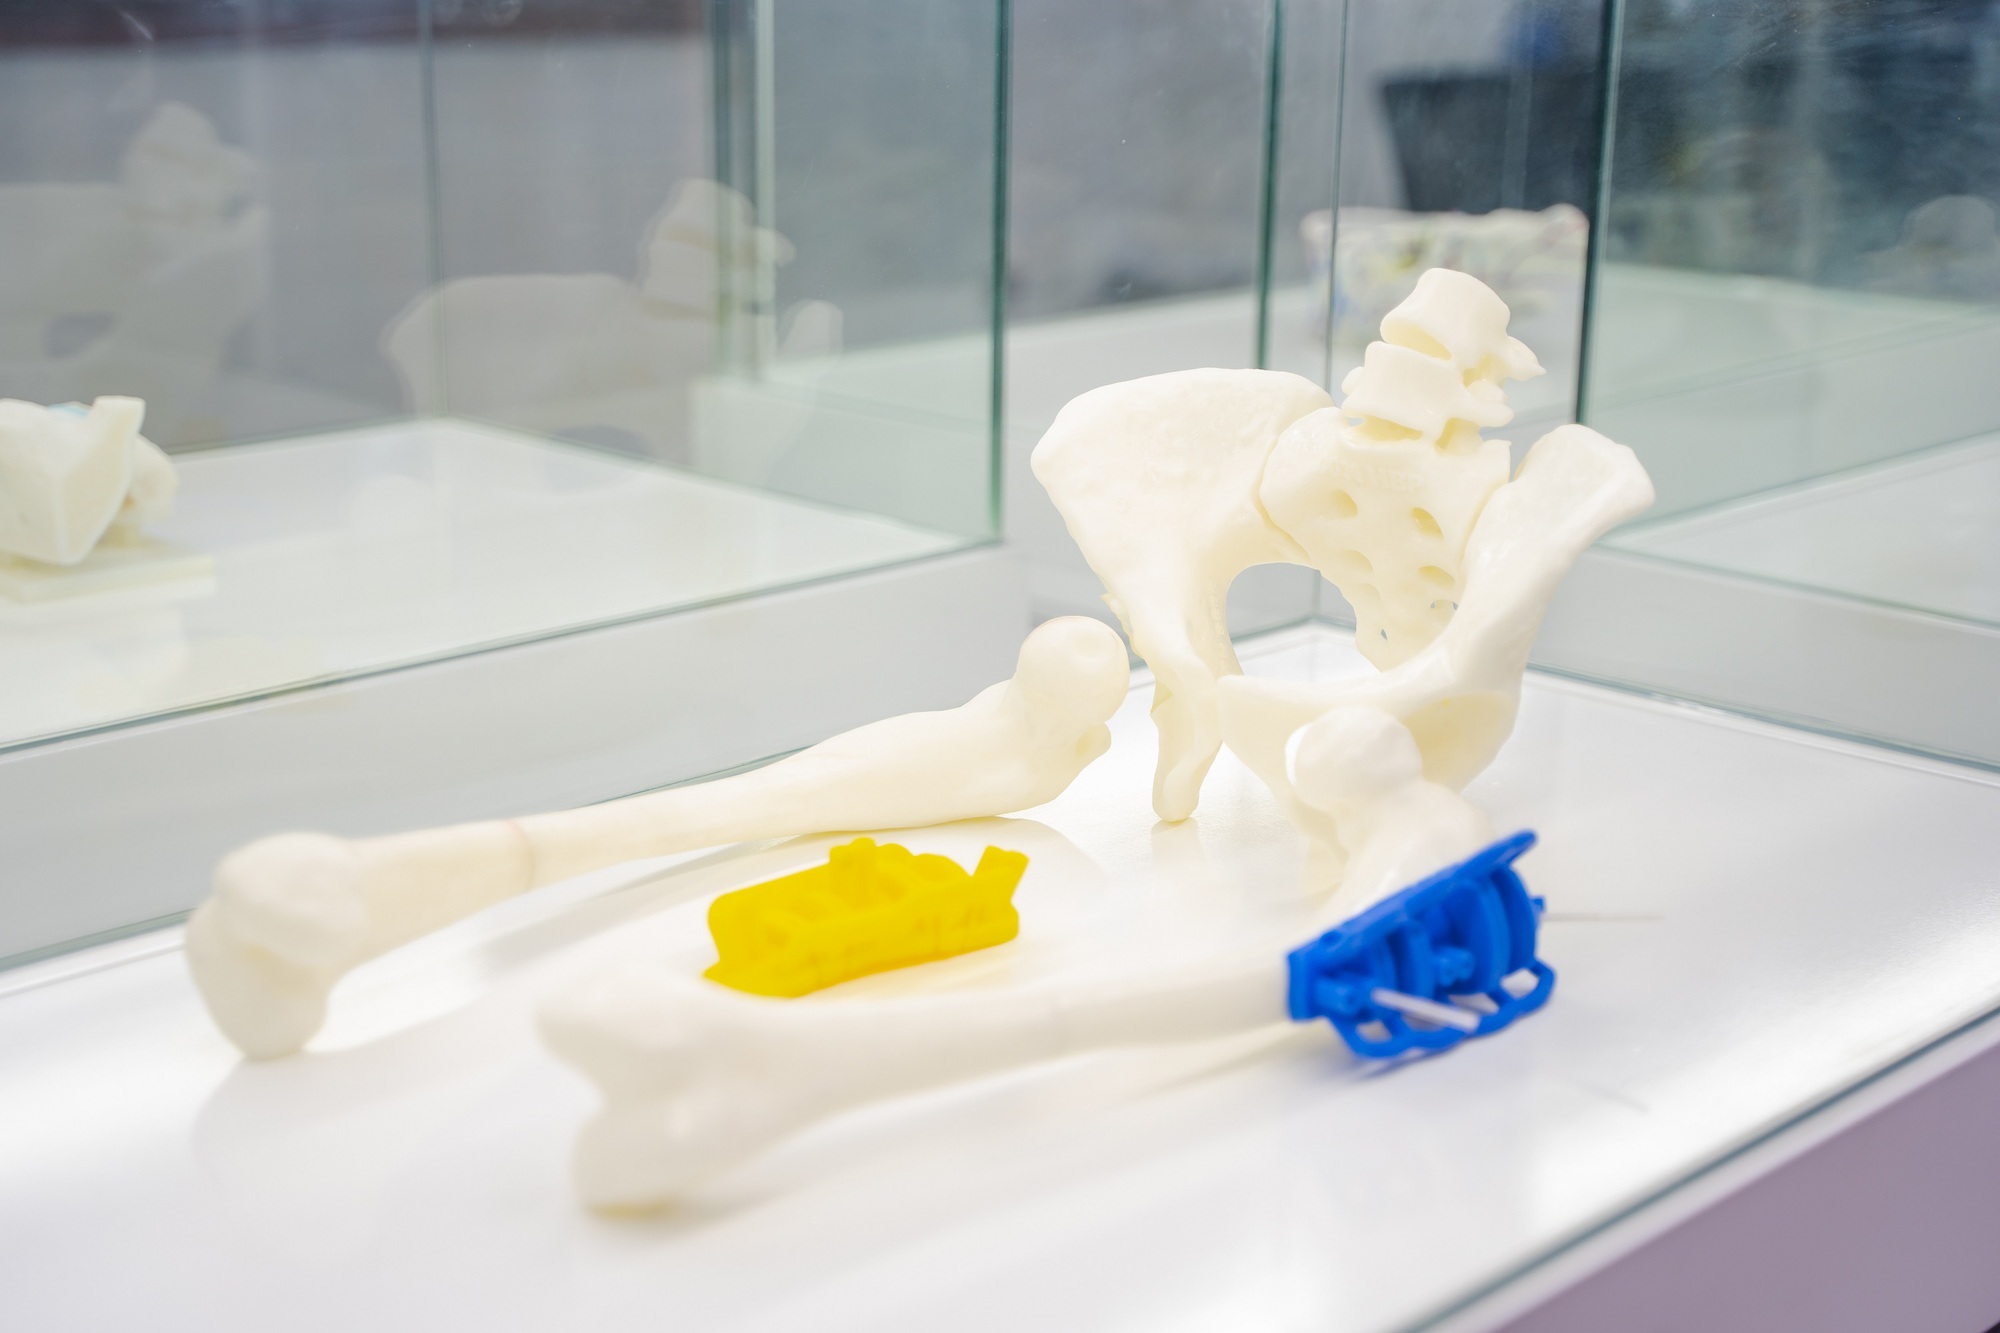 Hình ảnh minh họa trợ cụ dẫn đường phẫu thuật được nghiên cứu và phát triển độc quyền tại Trung tâm Công nghệ 3D trong Y học VinUni, được ứng dụng thành công để phẫu thuật một ca bệnh biến dạng nặng xương đùi.